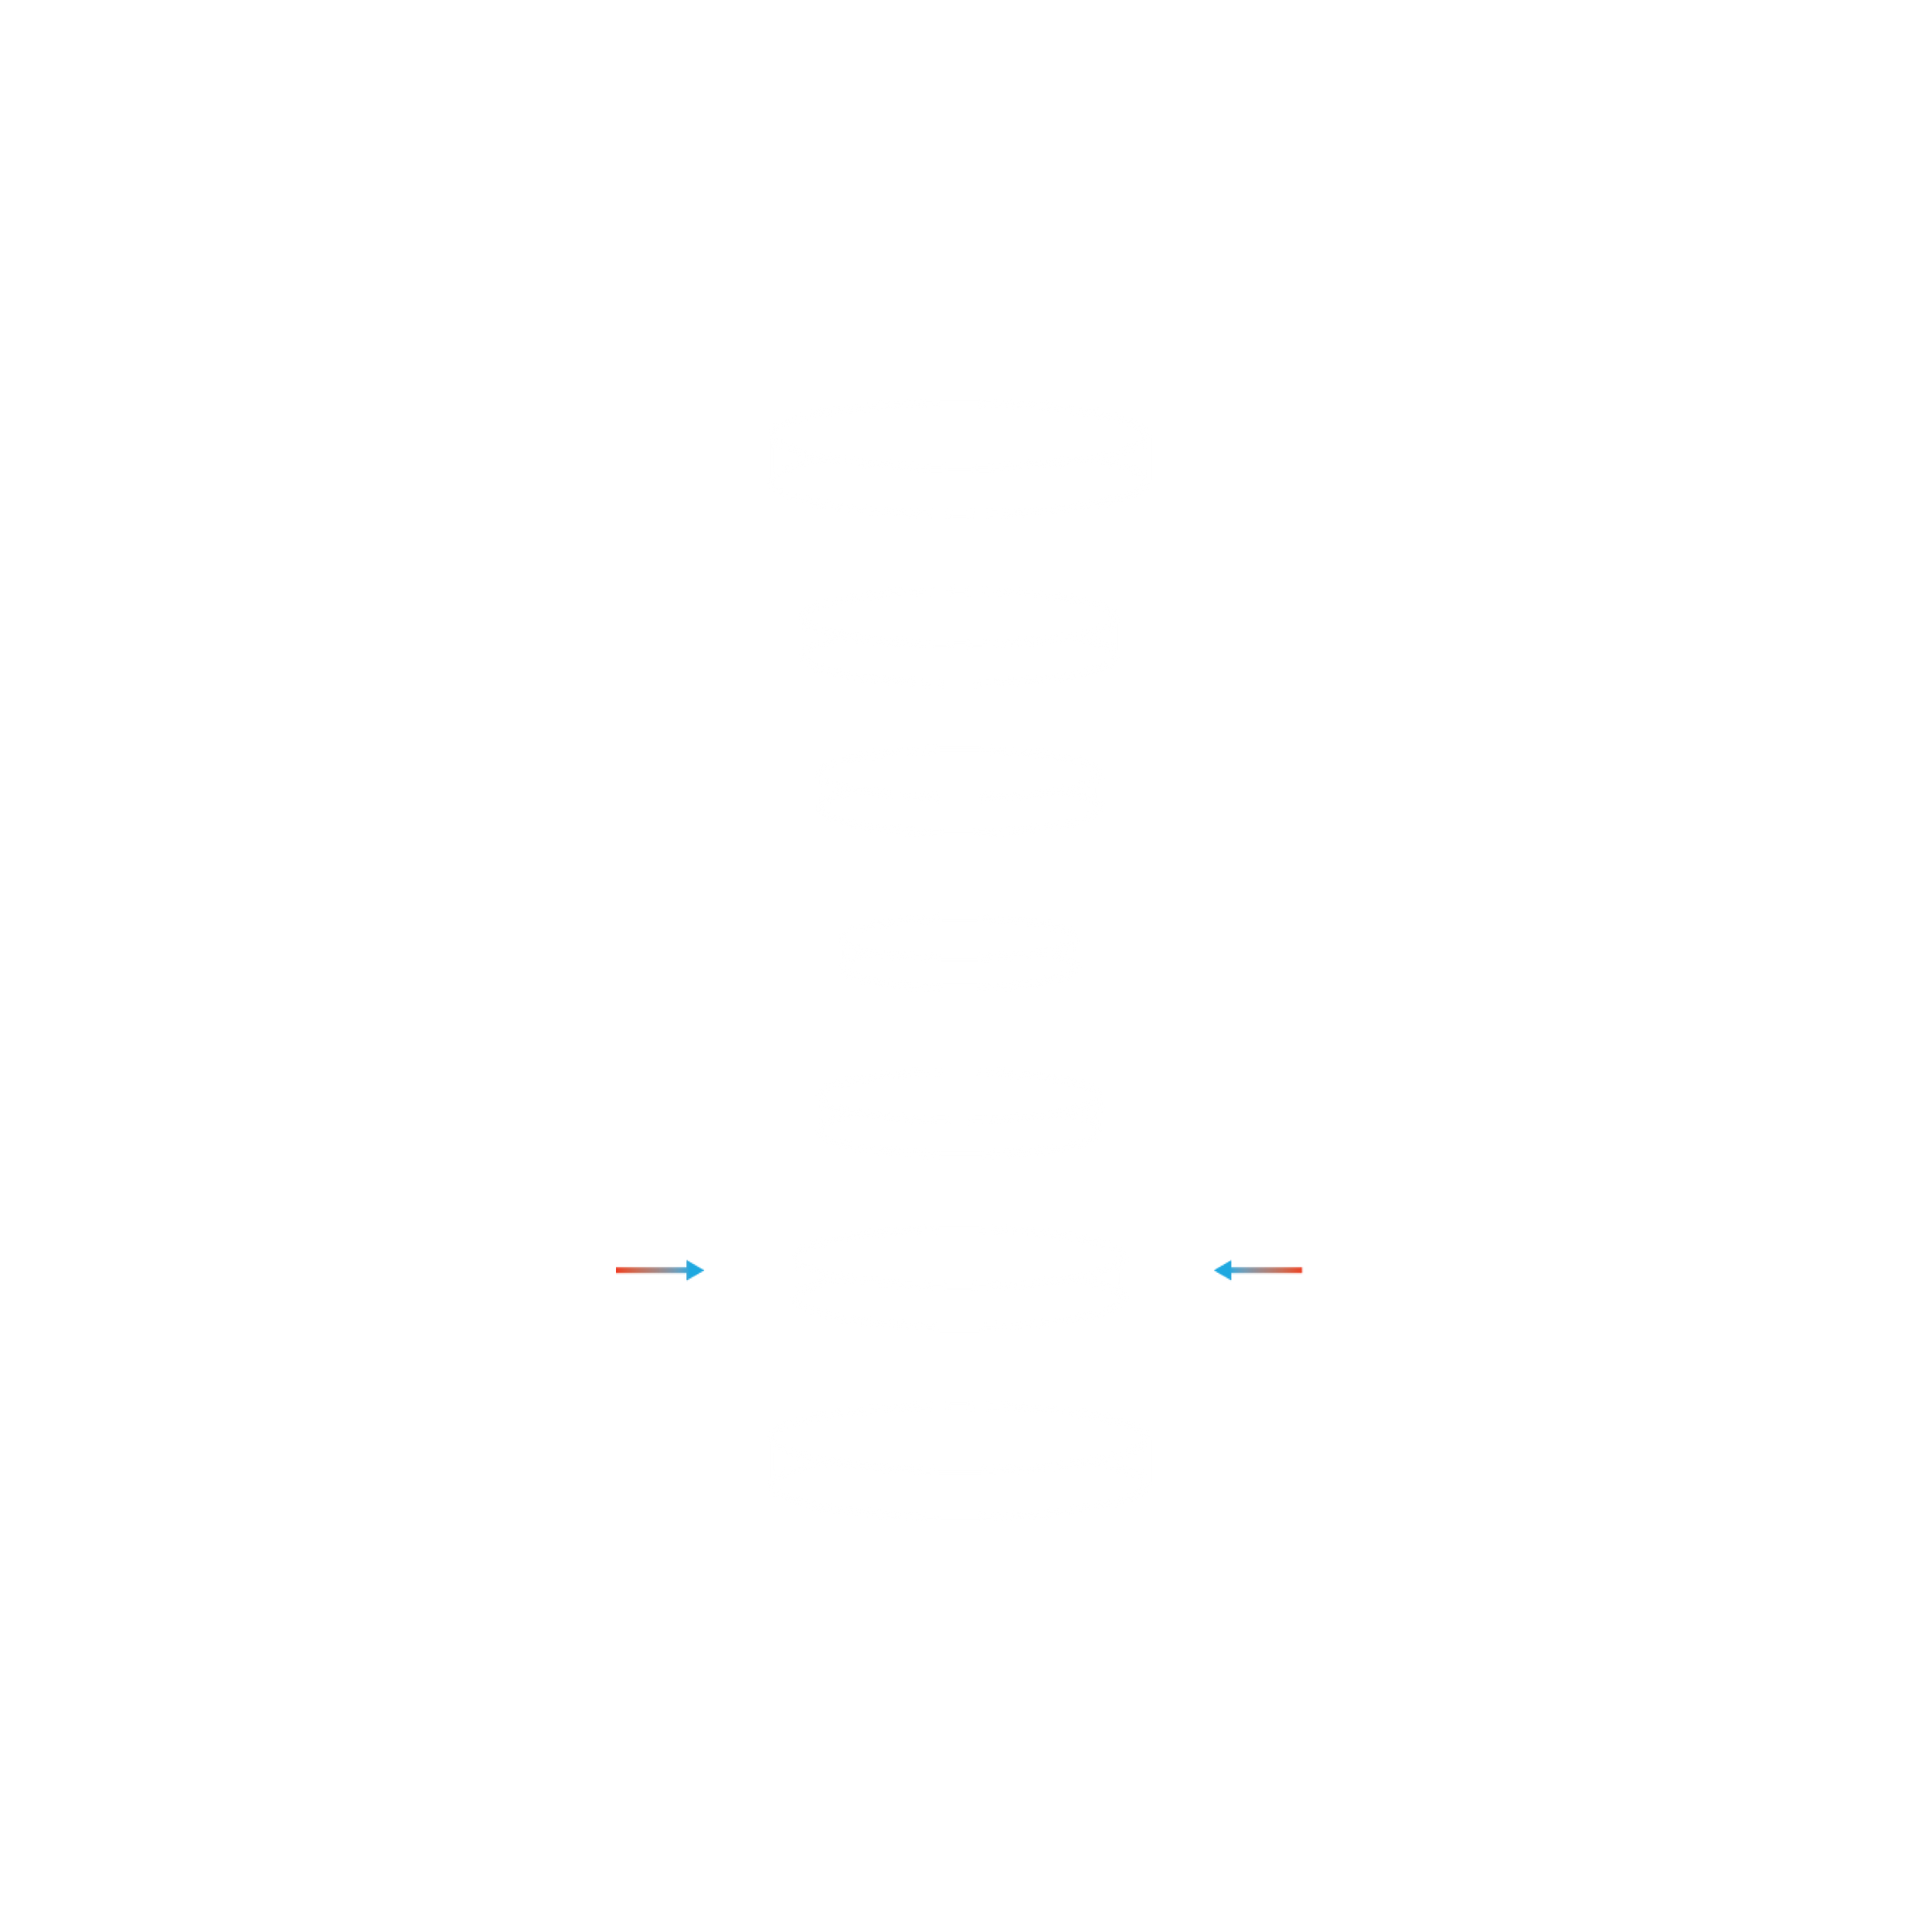 黑色背景中的圆柱形示意图，演示脊柱支撑效果。